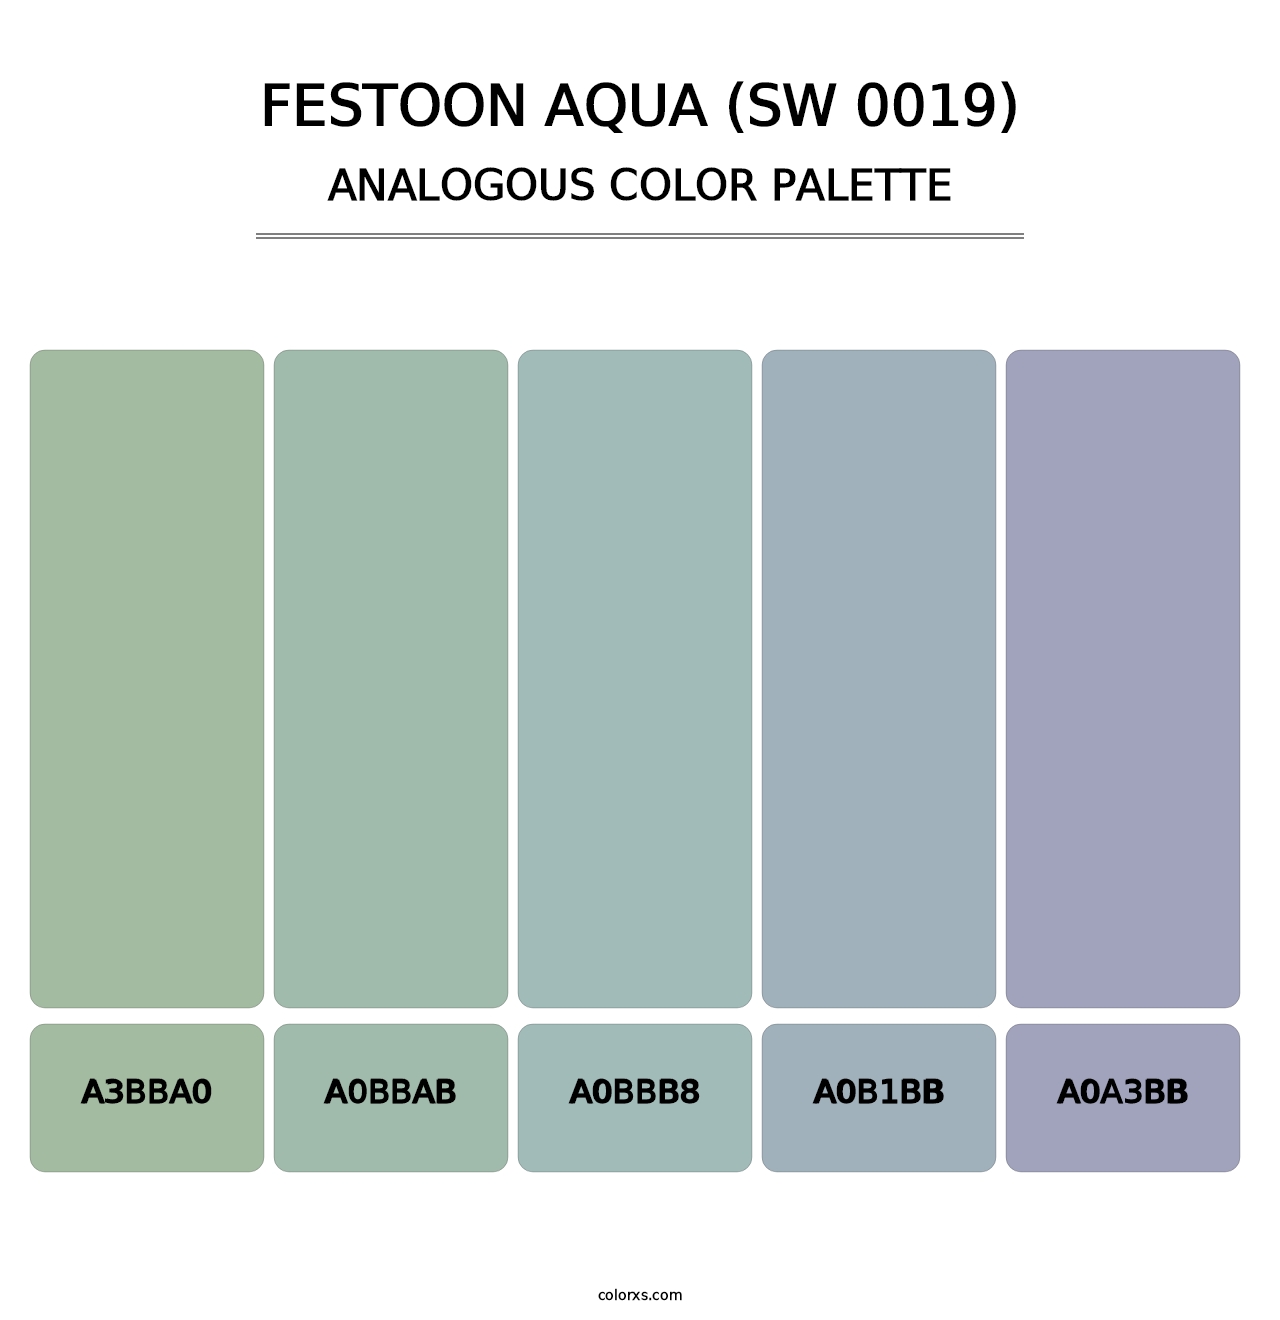 Festoon Aqua (SW 0019) - Analogous Color Palette